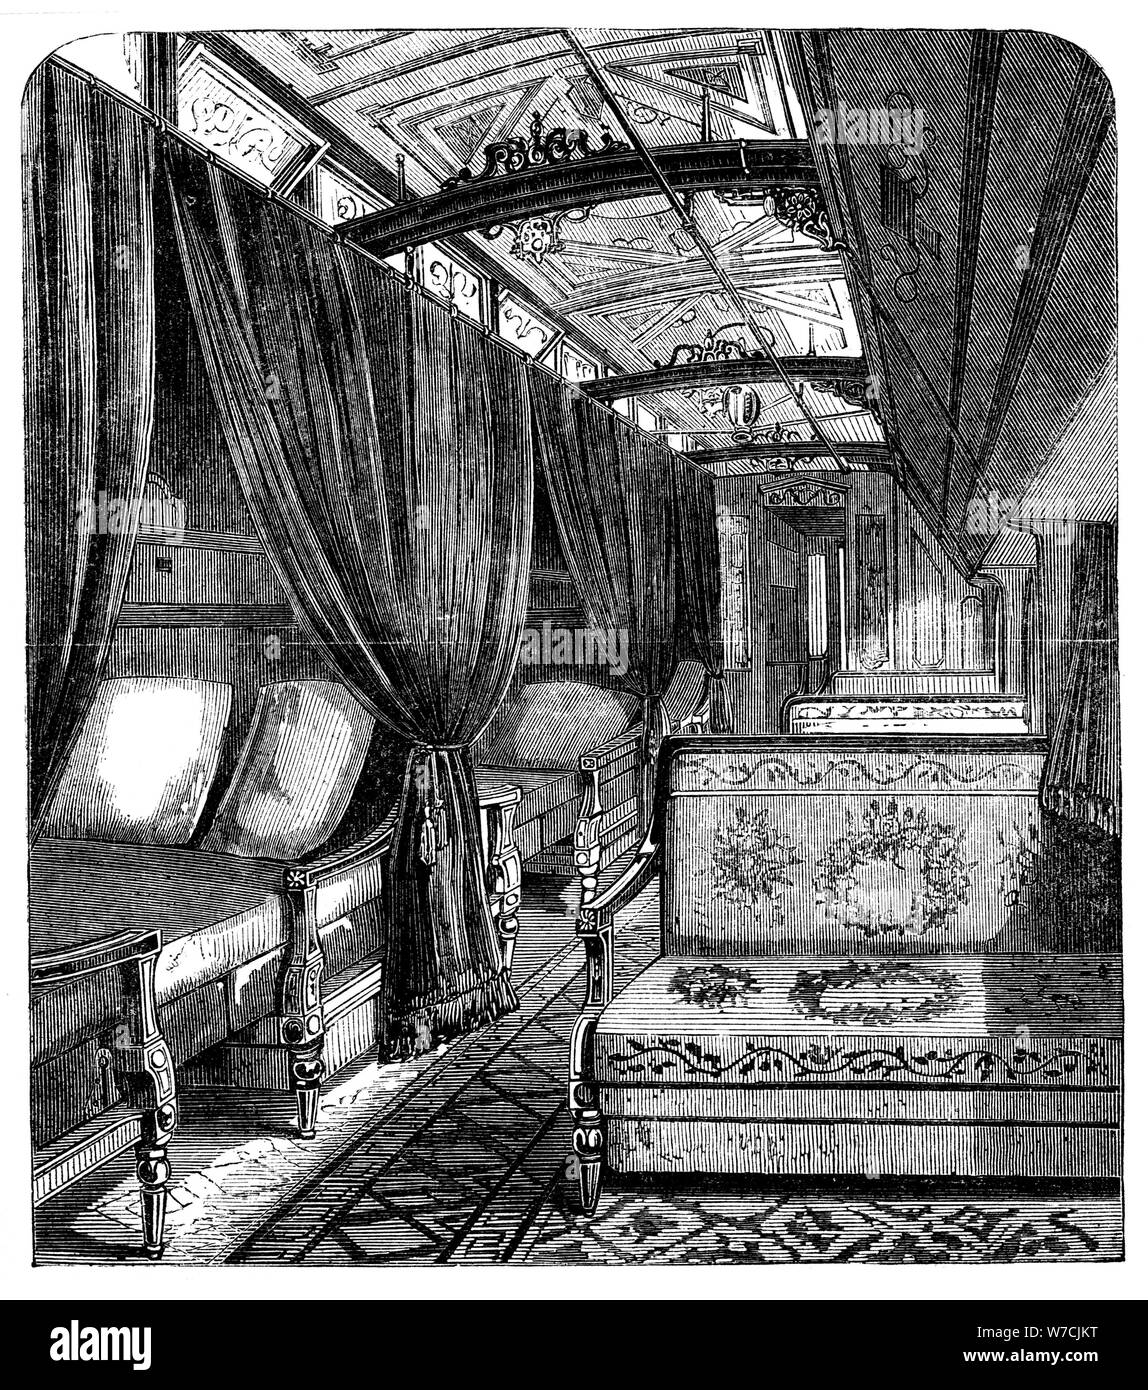 Voiture-lits Pullman sur l'Union Pacific Railroad, c1869. Artiste : Inconnu Banque D'Images